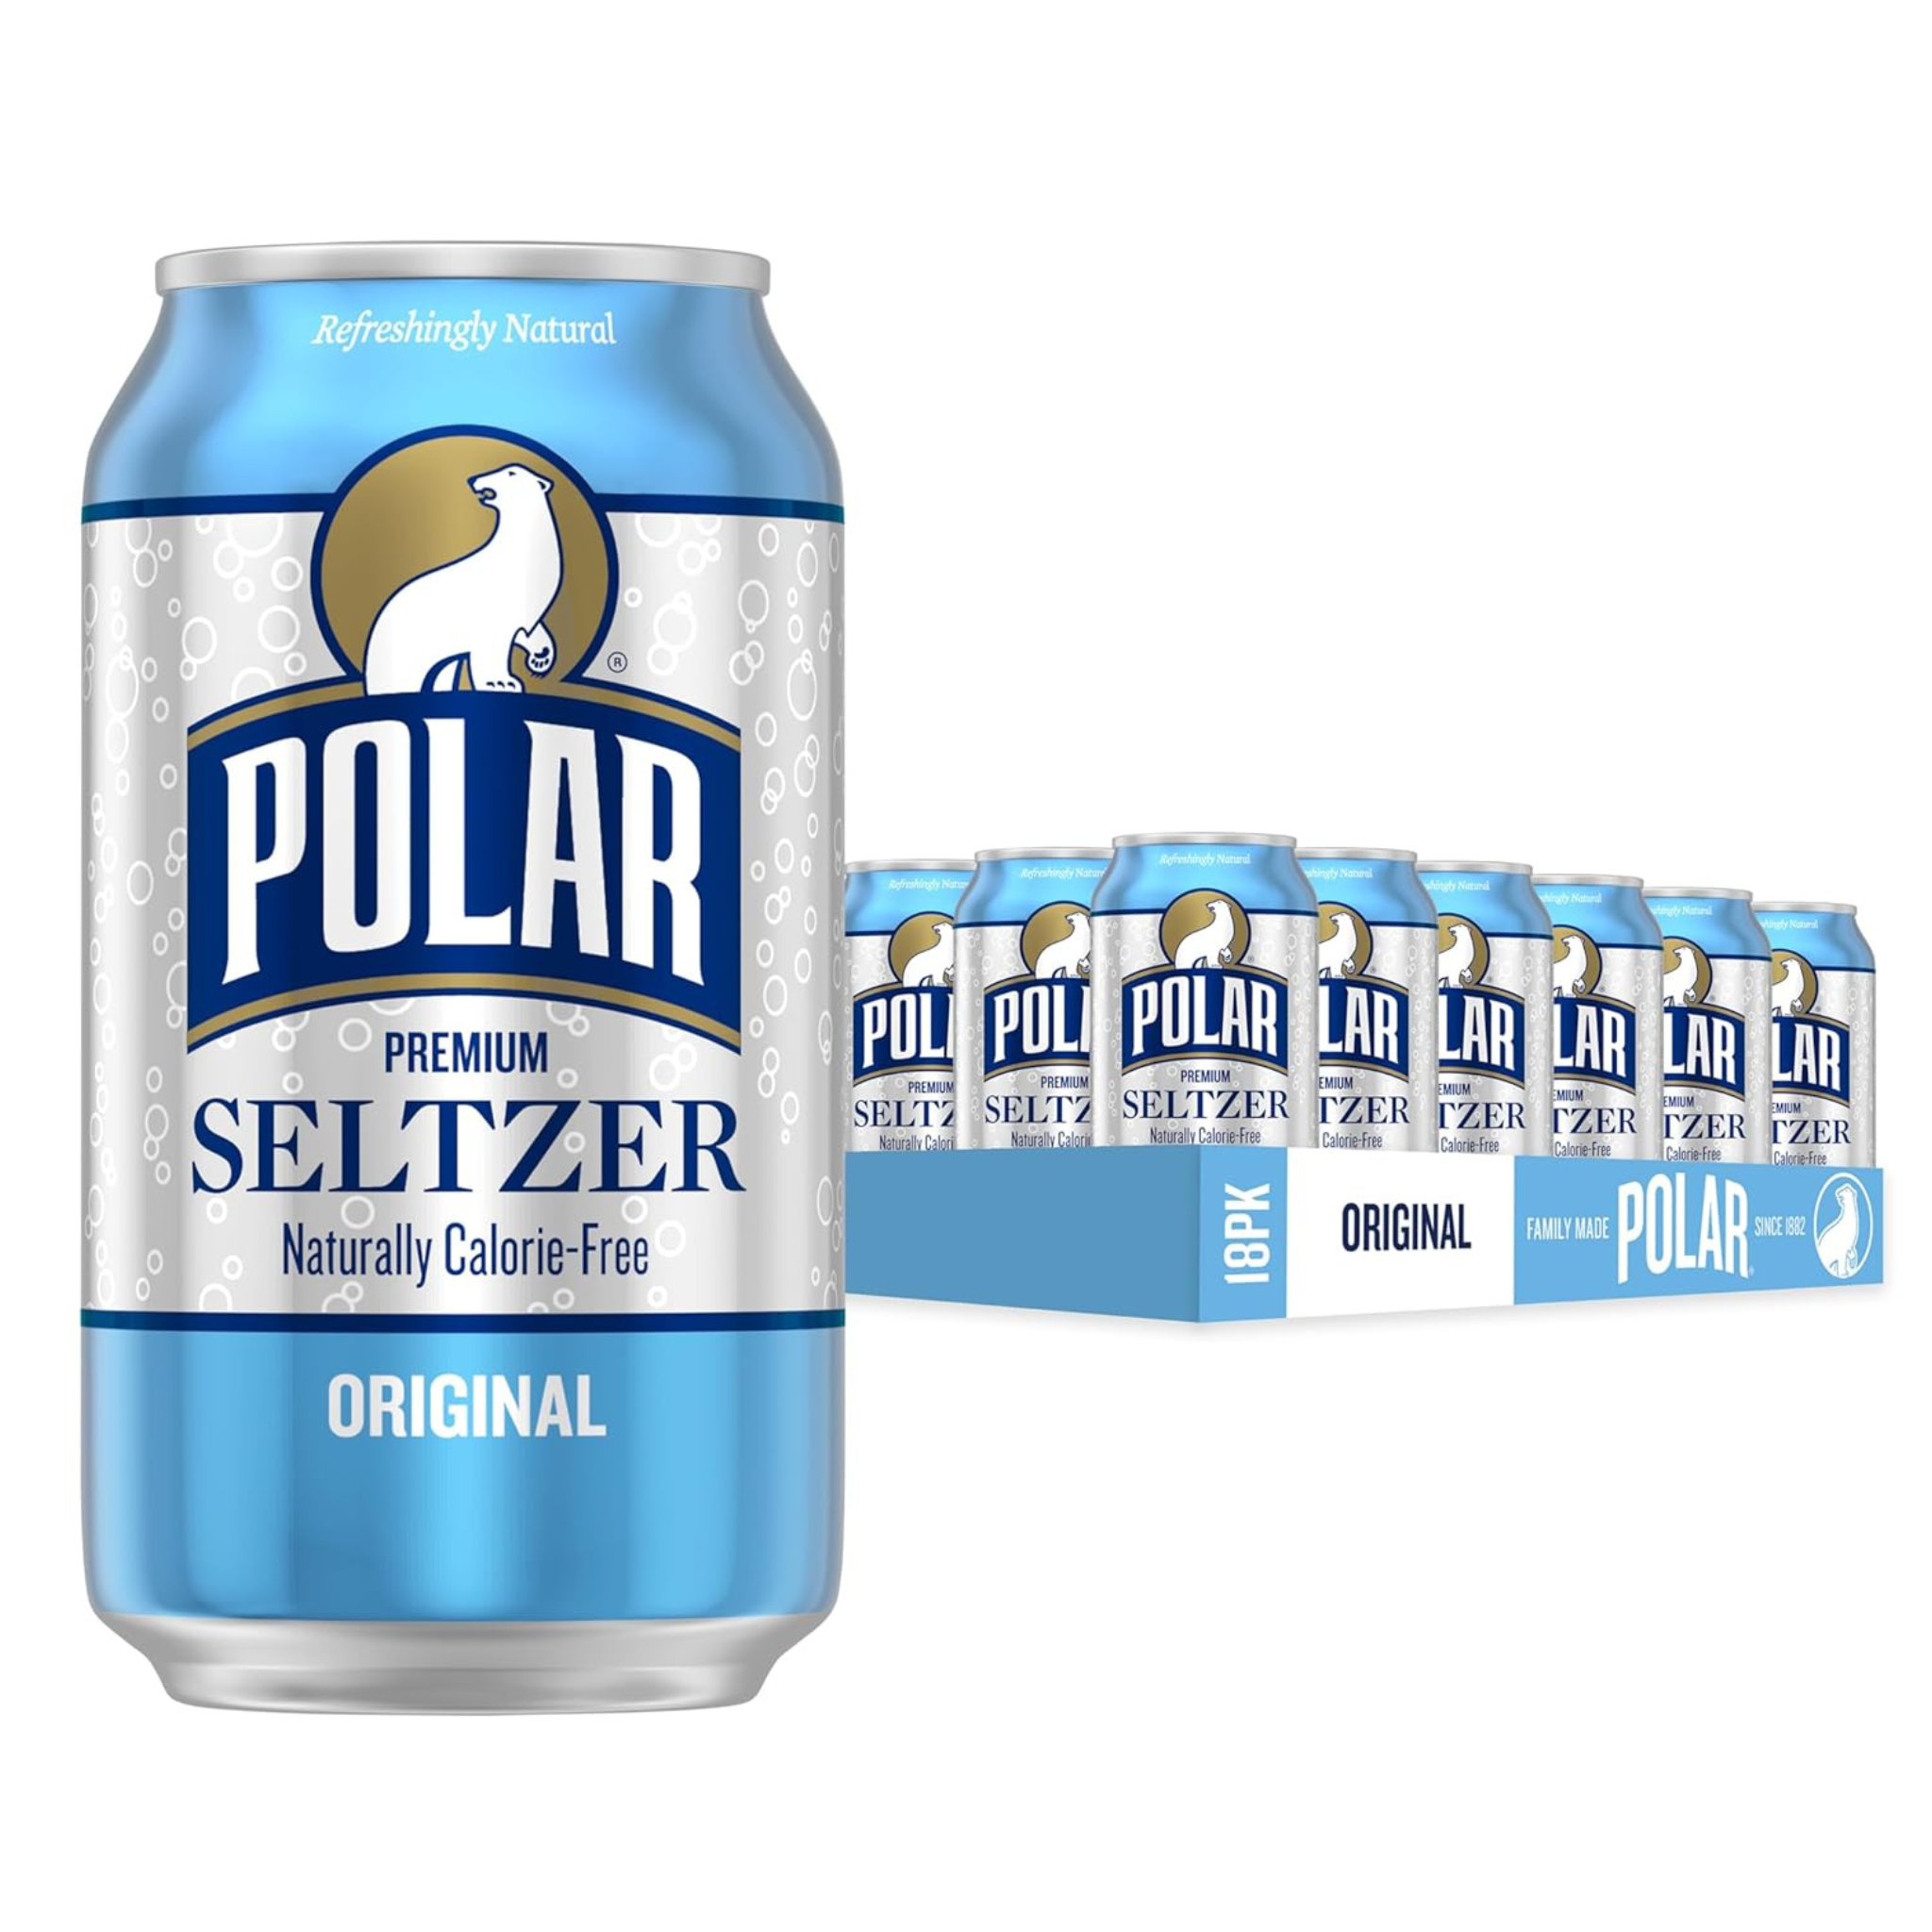 Polar Seltzer Water Original, 12 fl oz cans, 18 pack